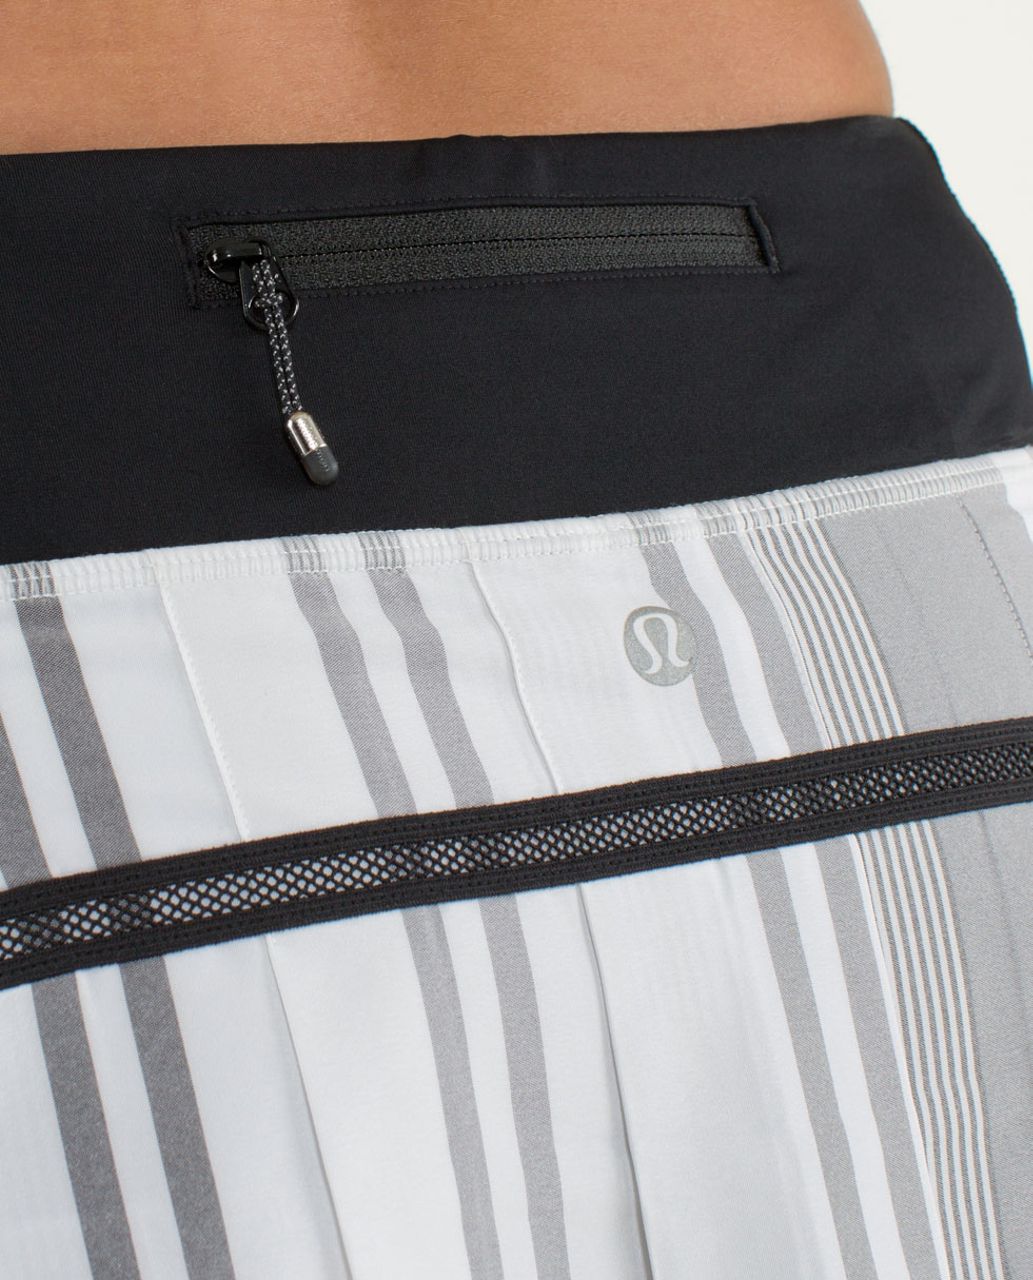 Lululemon Run:  Pace Setter Skirt (Regular) - Groovy Stripe Nimbus / Black